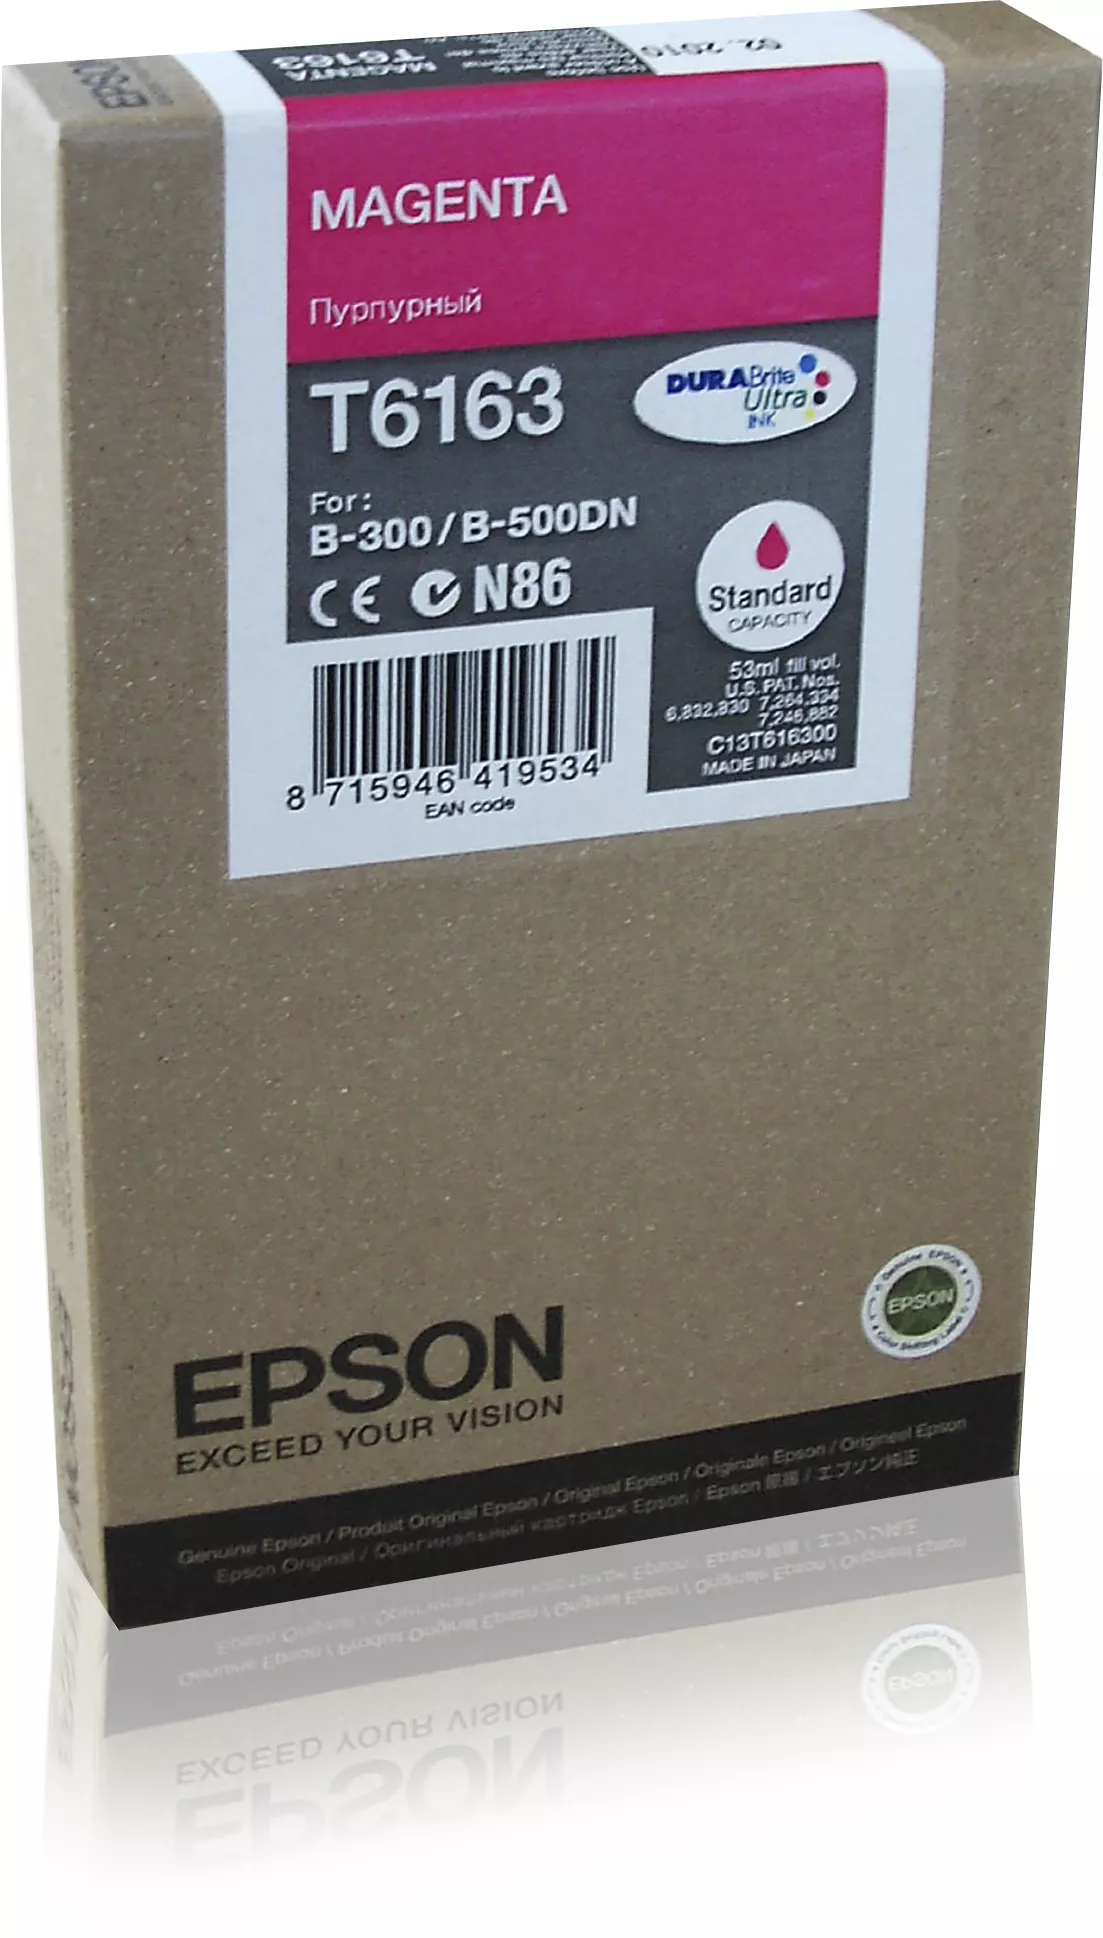 Vente EPSON T6163 cartouche de encre magenta capacité standard au meilleur prix